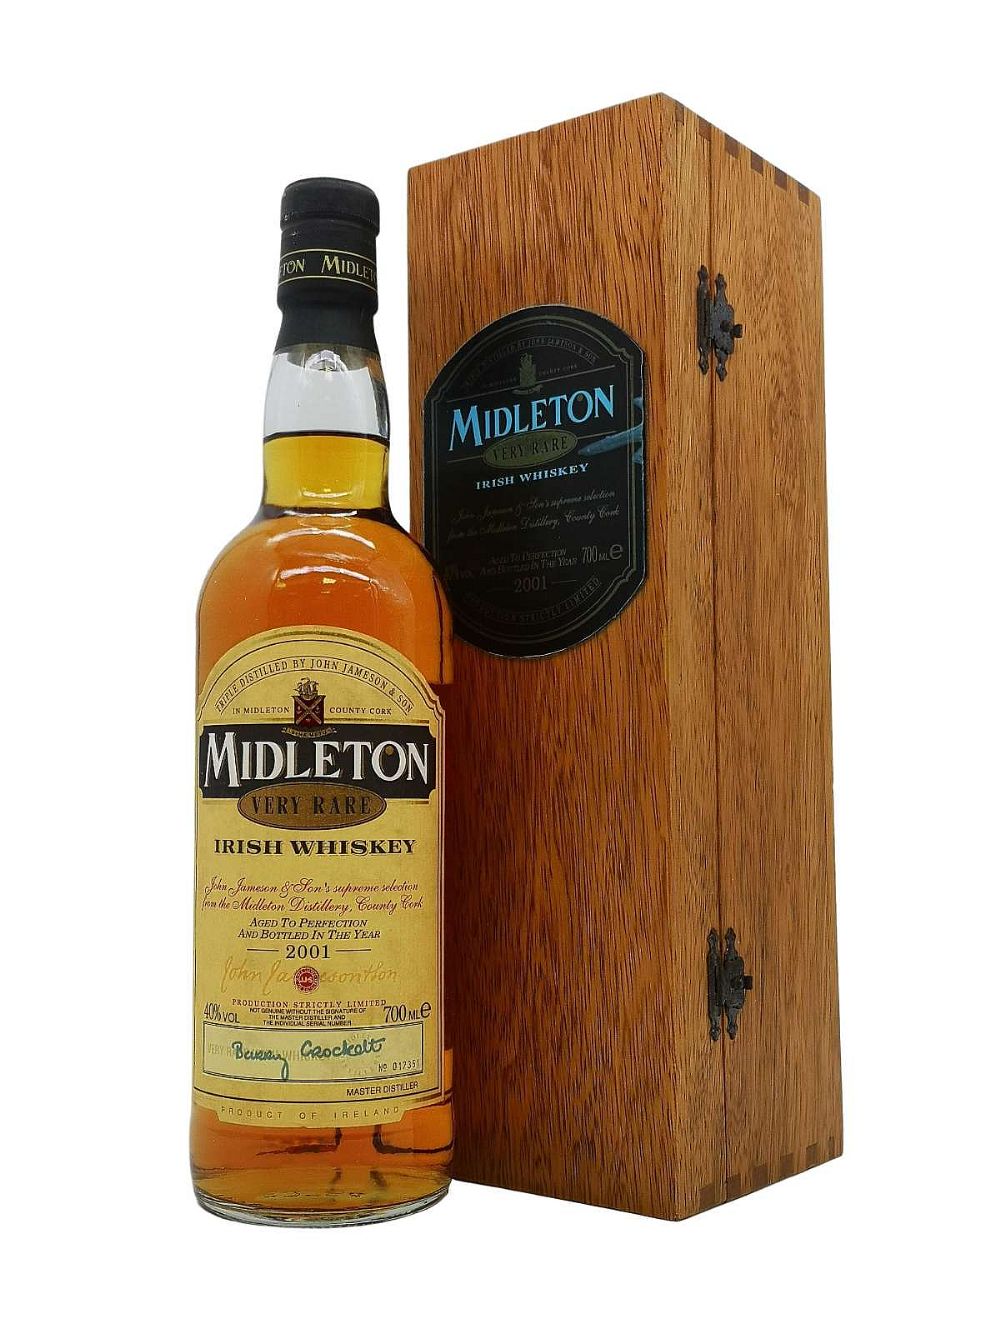 Midleton Very Rare 2001